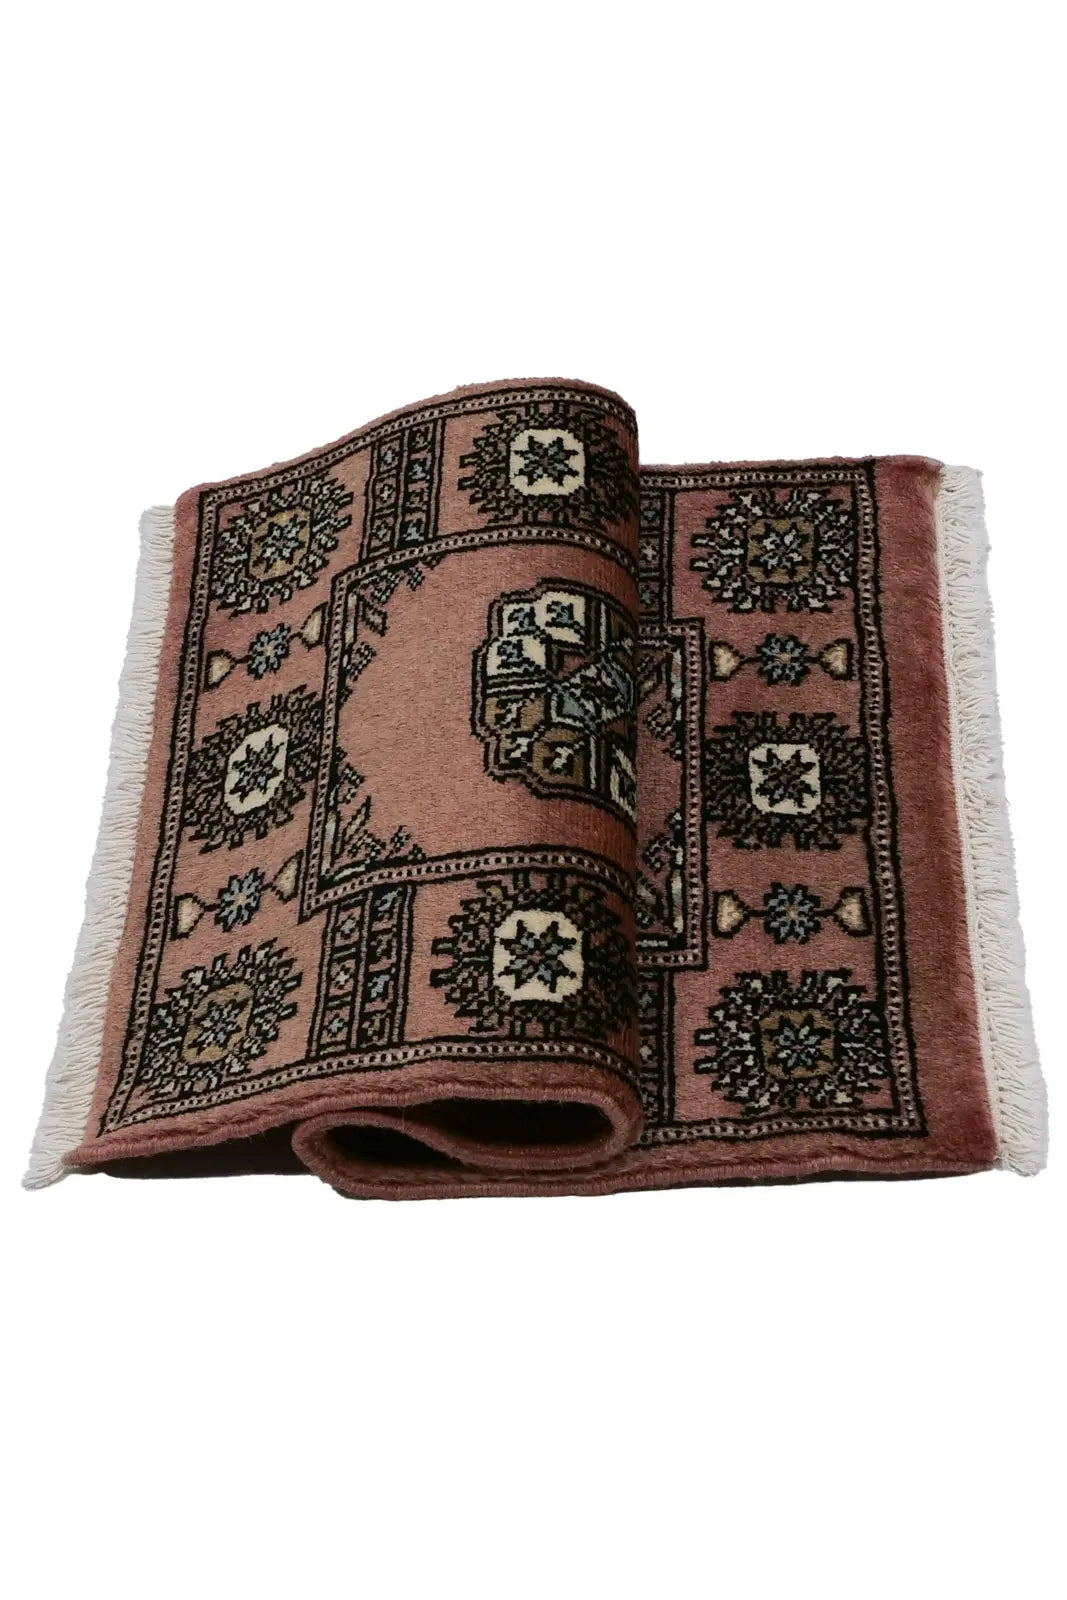 パキスタン絨毯(48x75cm)ピンク 玄関マットサイズ【ラグ専門店 